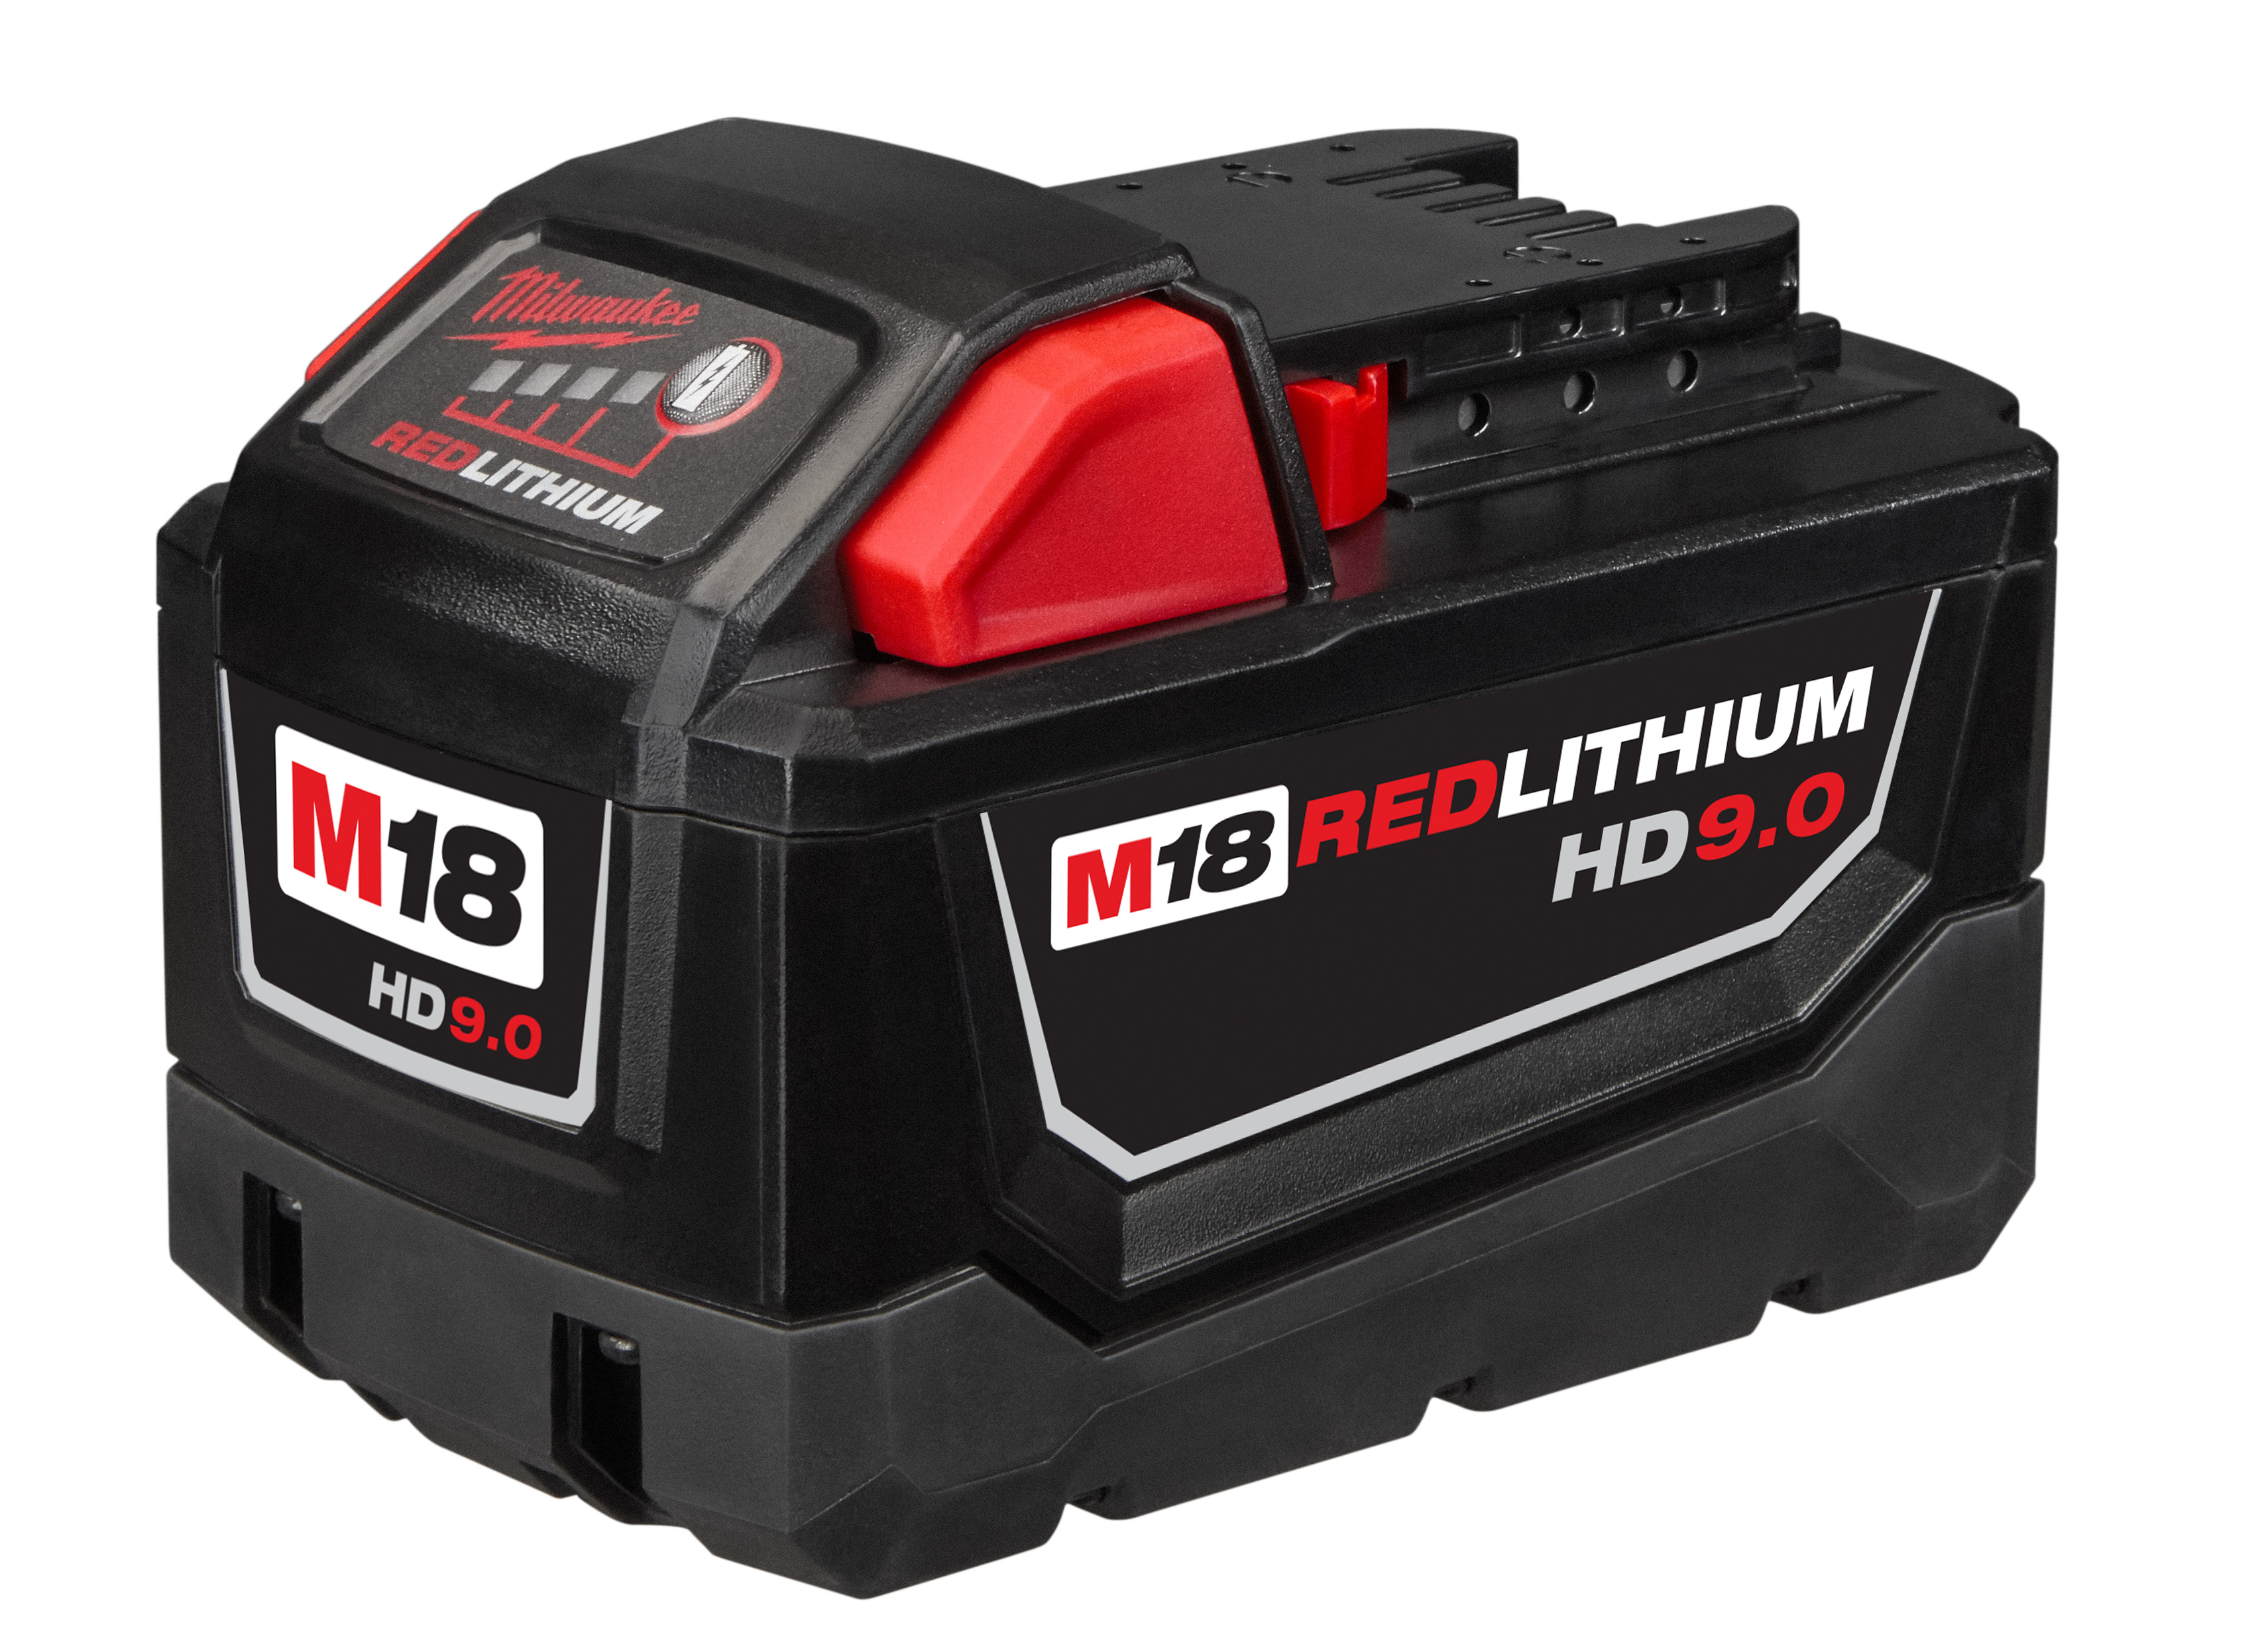 48111890 - M18 Redlithium High Demand 9.0 Battery Pack - Milwaukee